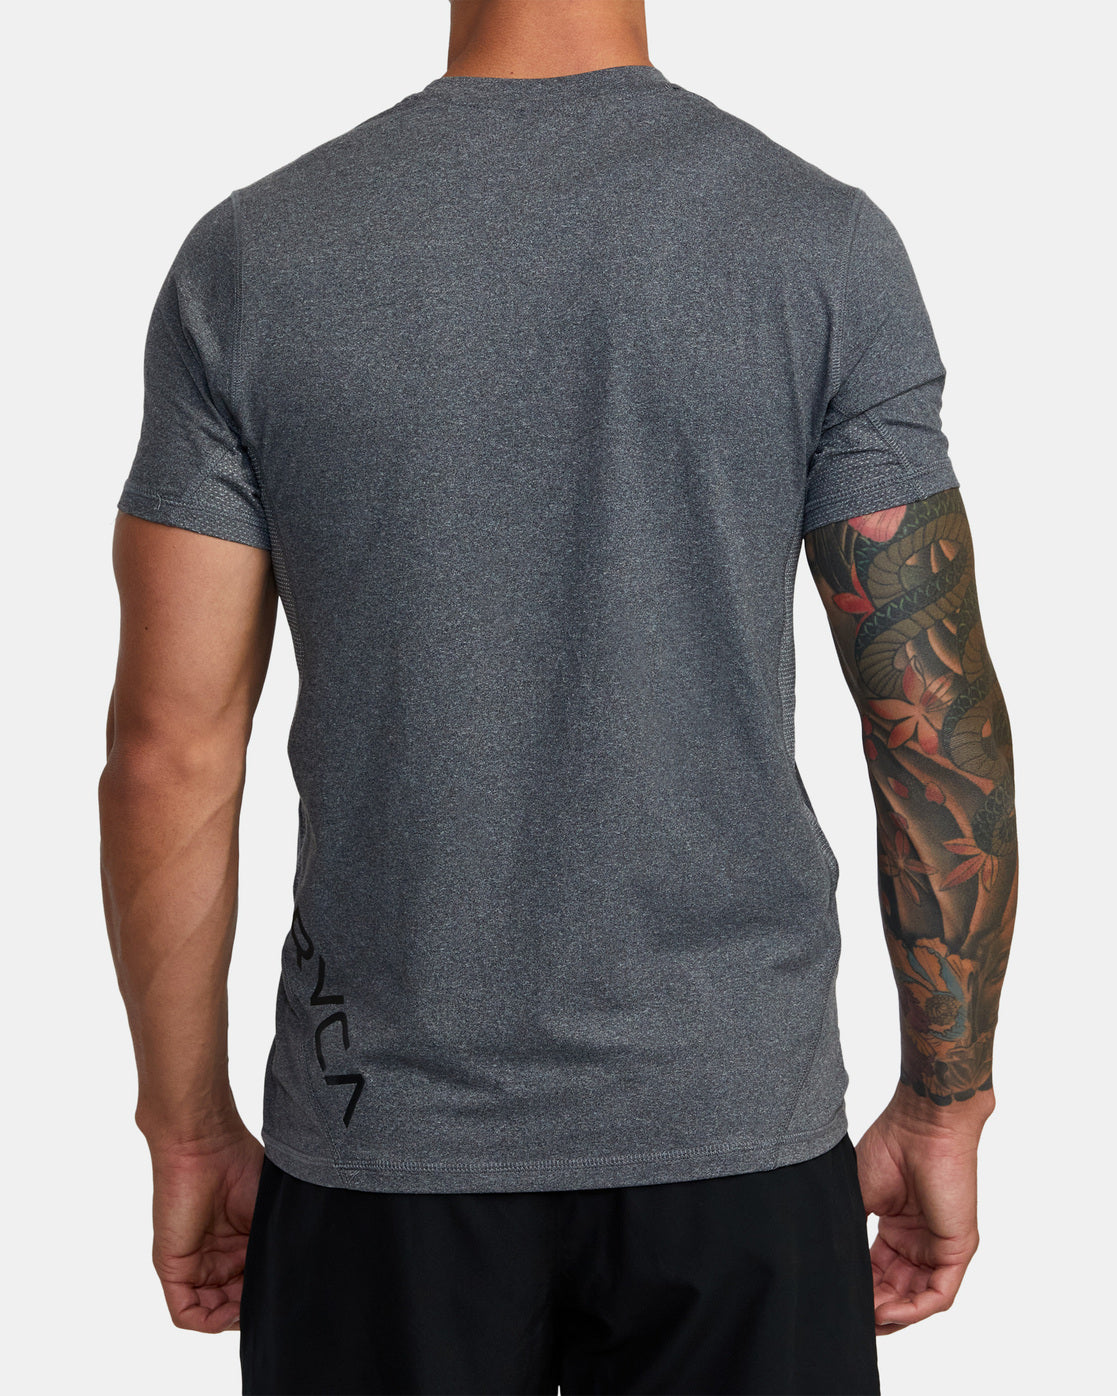 T-shirt technique Rvca VA Sport Vent - Charcoal Heather | Collection_Zalando | Nouveaux produits | Produits les plus récents | Produits les plus vendus | t-shirts pour hommes | T-shirts à manches courtes pour hommes | surfdevils.com